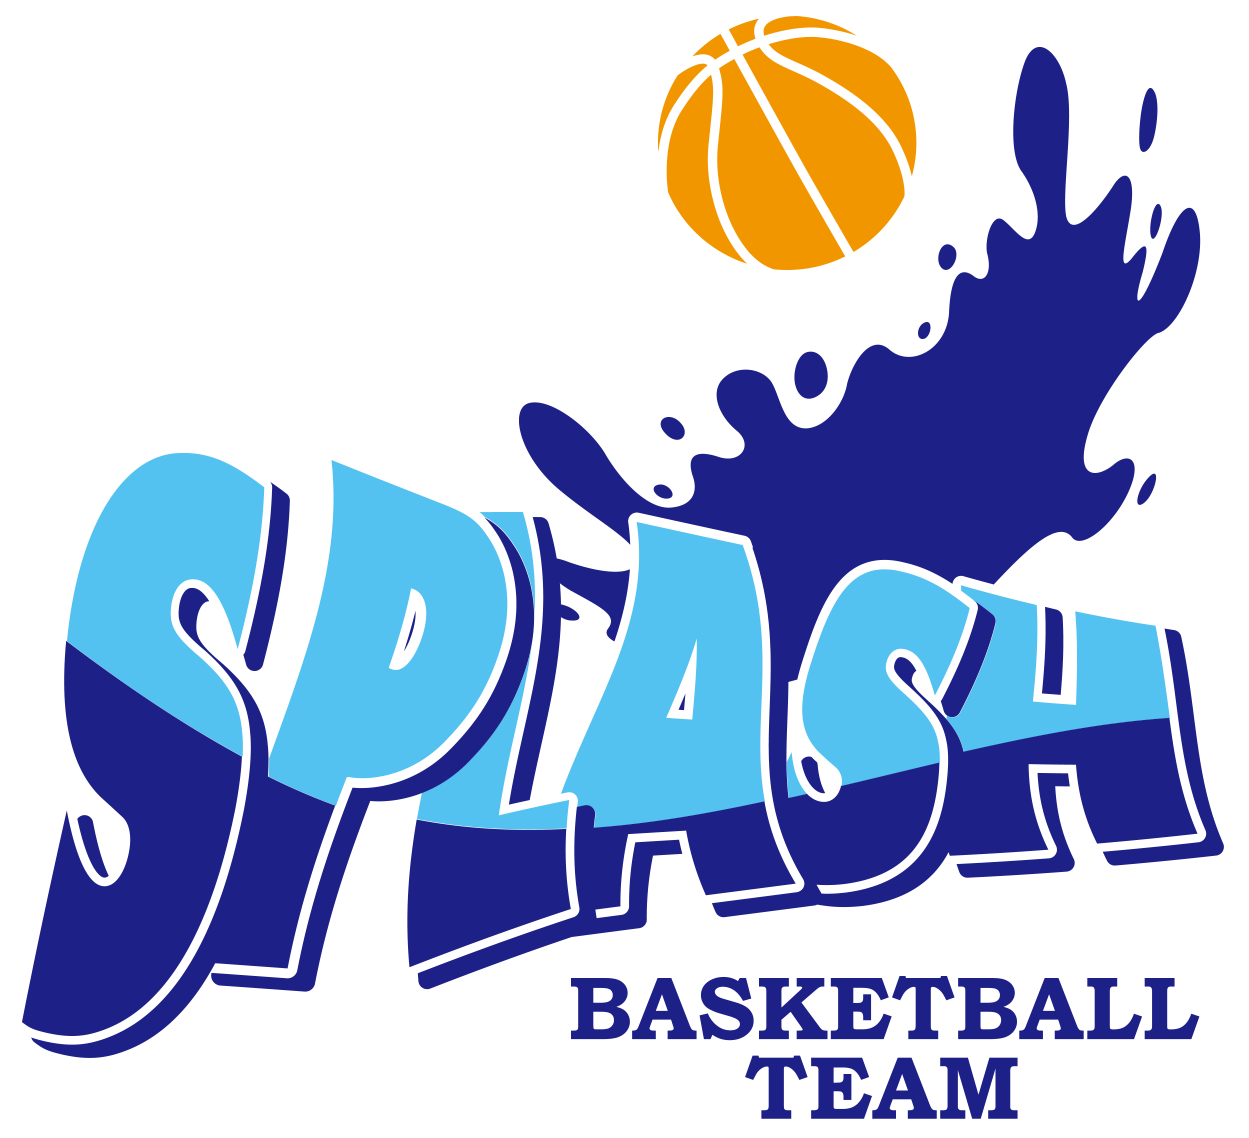 Splash_logo